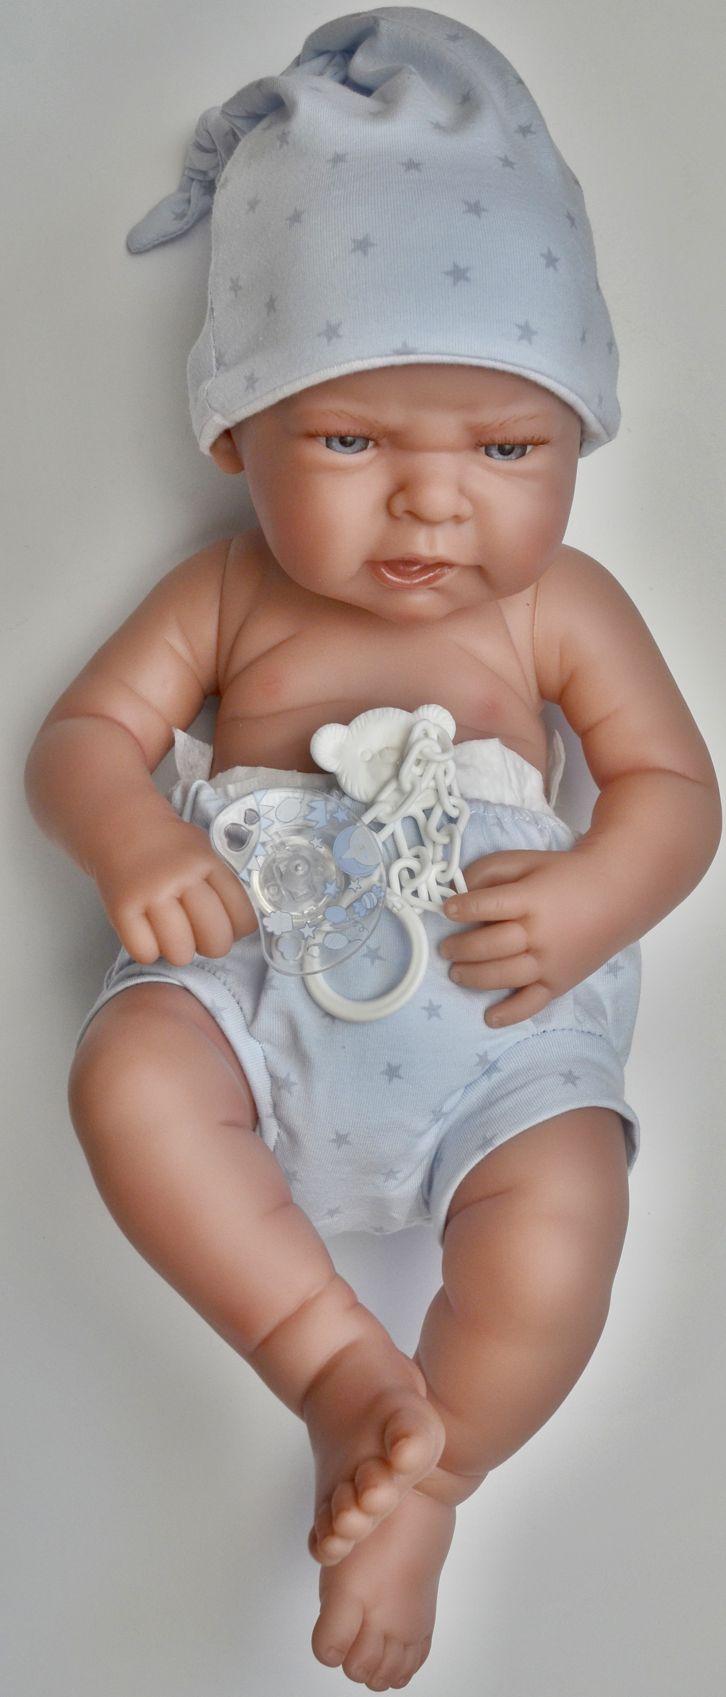 Realistické miminko - chlapeček Leo v modré čepičce od Antonio Juan